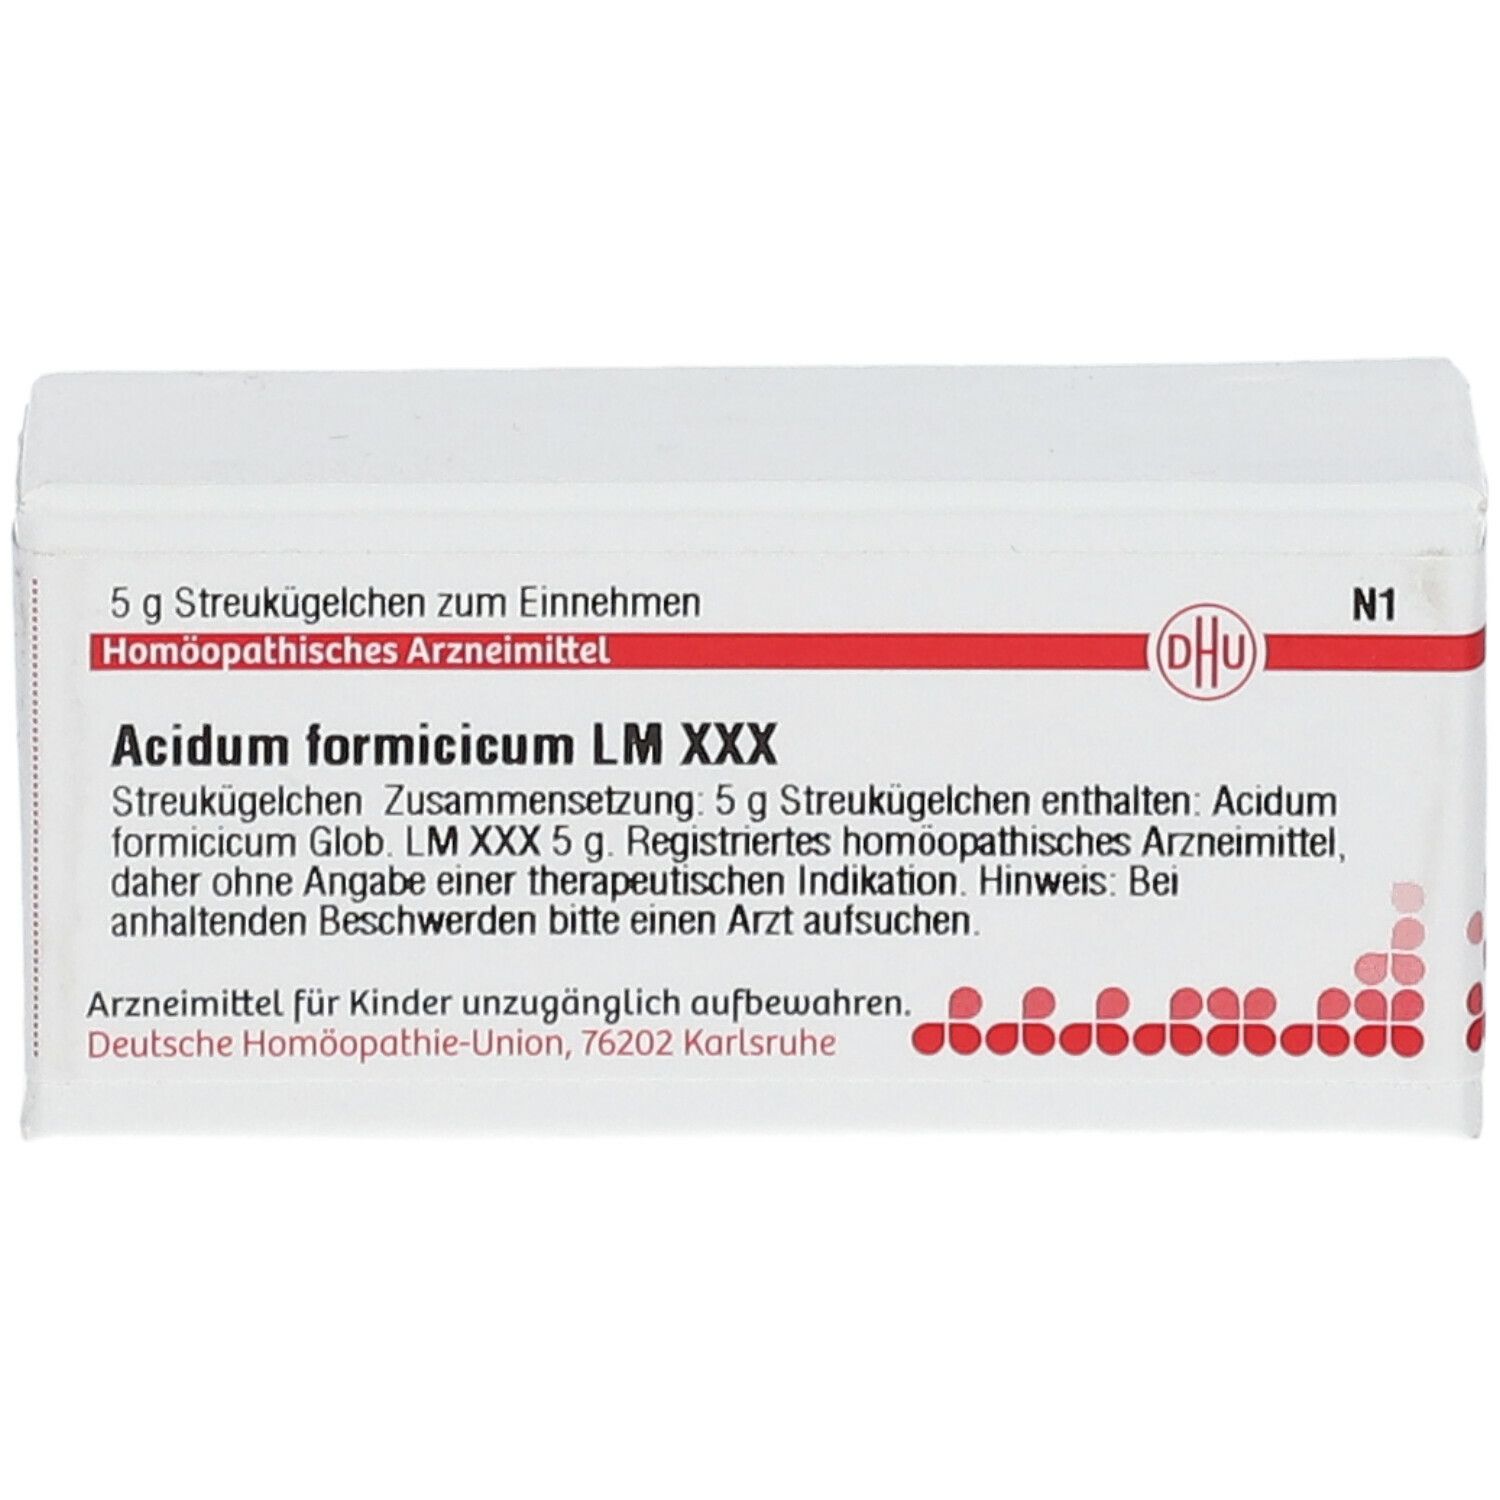 DHU Acidum Formicicum LM XXX